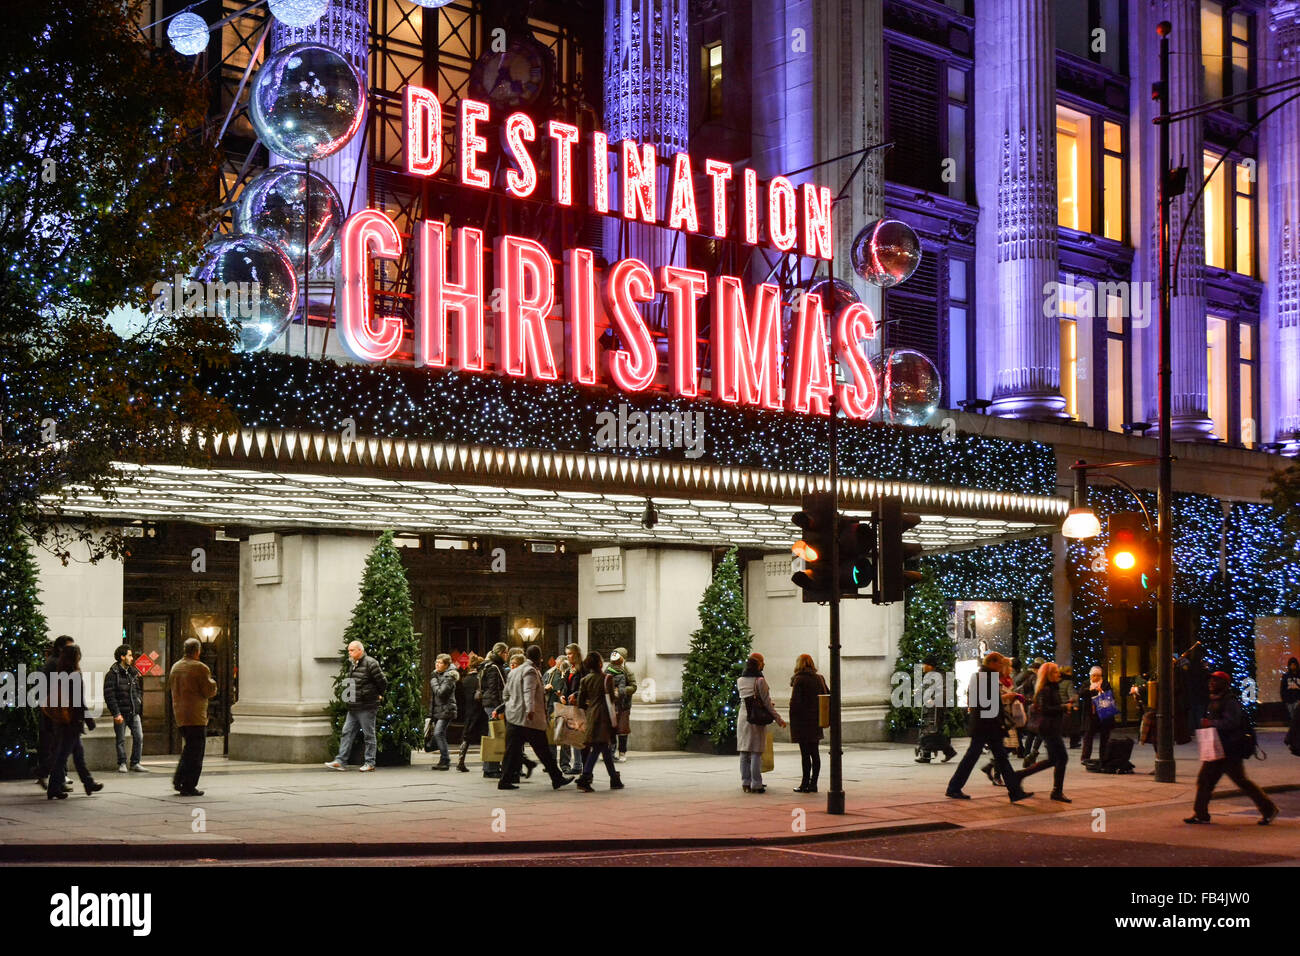 Grande magazzino Selfridges cartello di destinazione Natale sopra l'ingresso principale Oxford Street vista serale decorazioni natalizie West End Londra Inghilterra Regno Unito Foto Stock